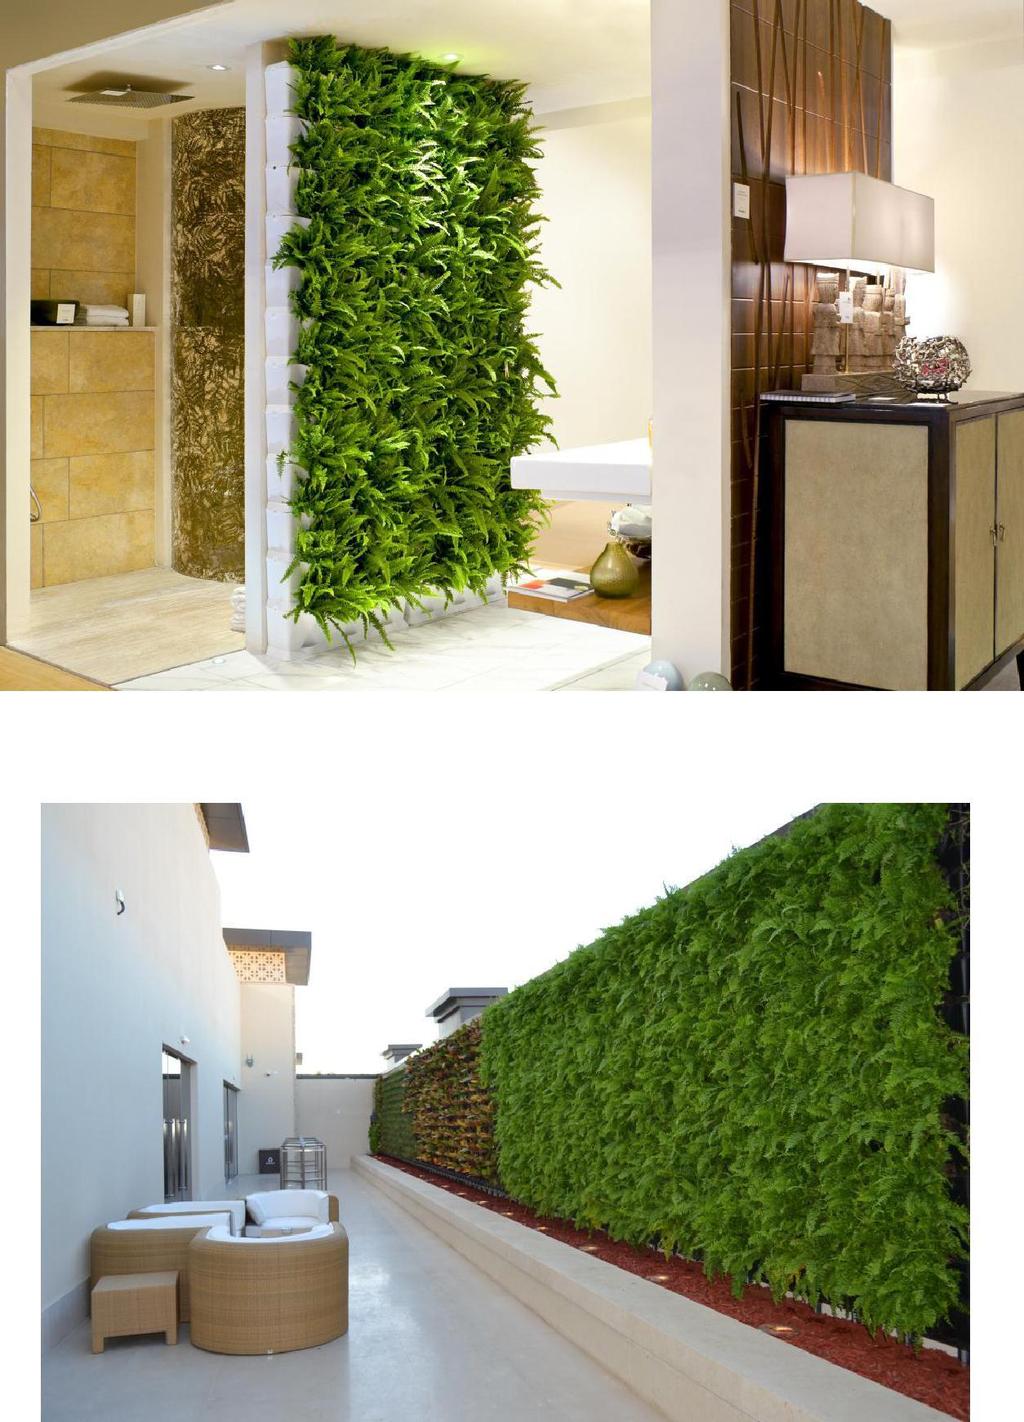 Green wall / Vertical